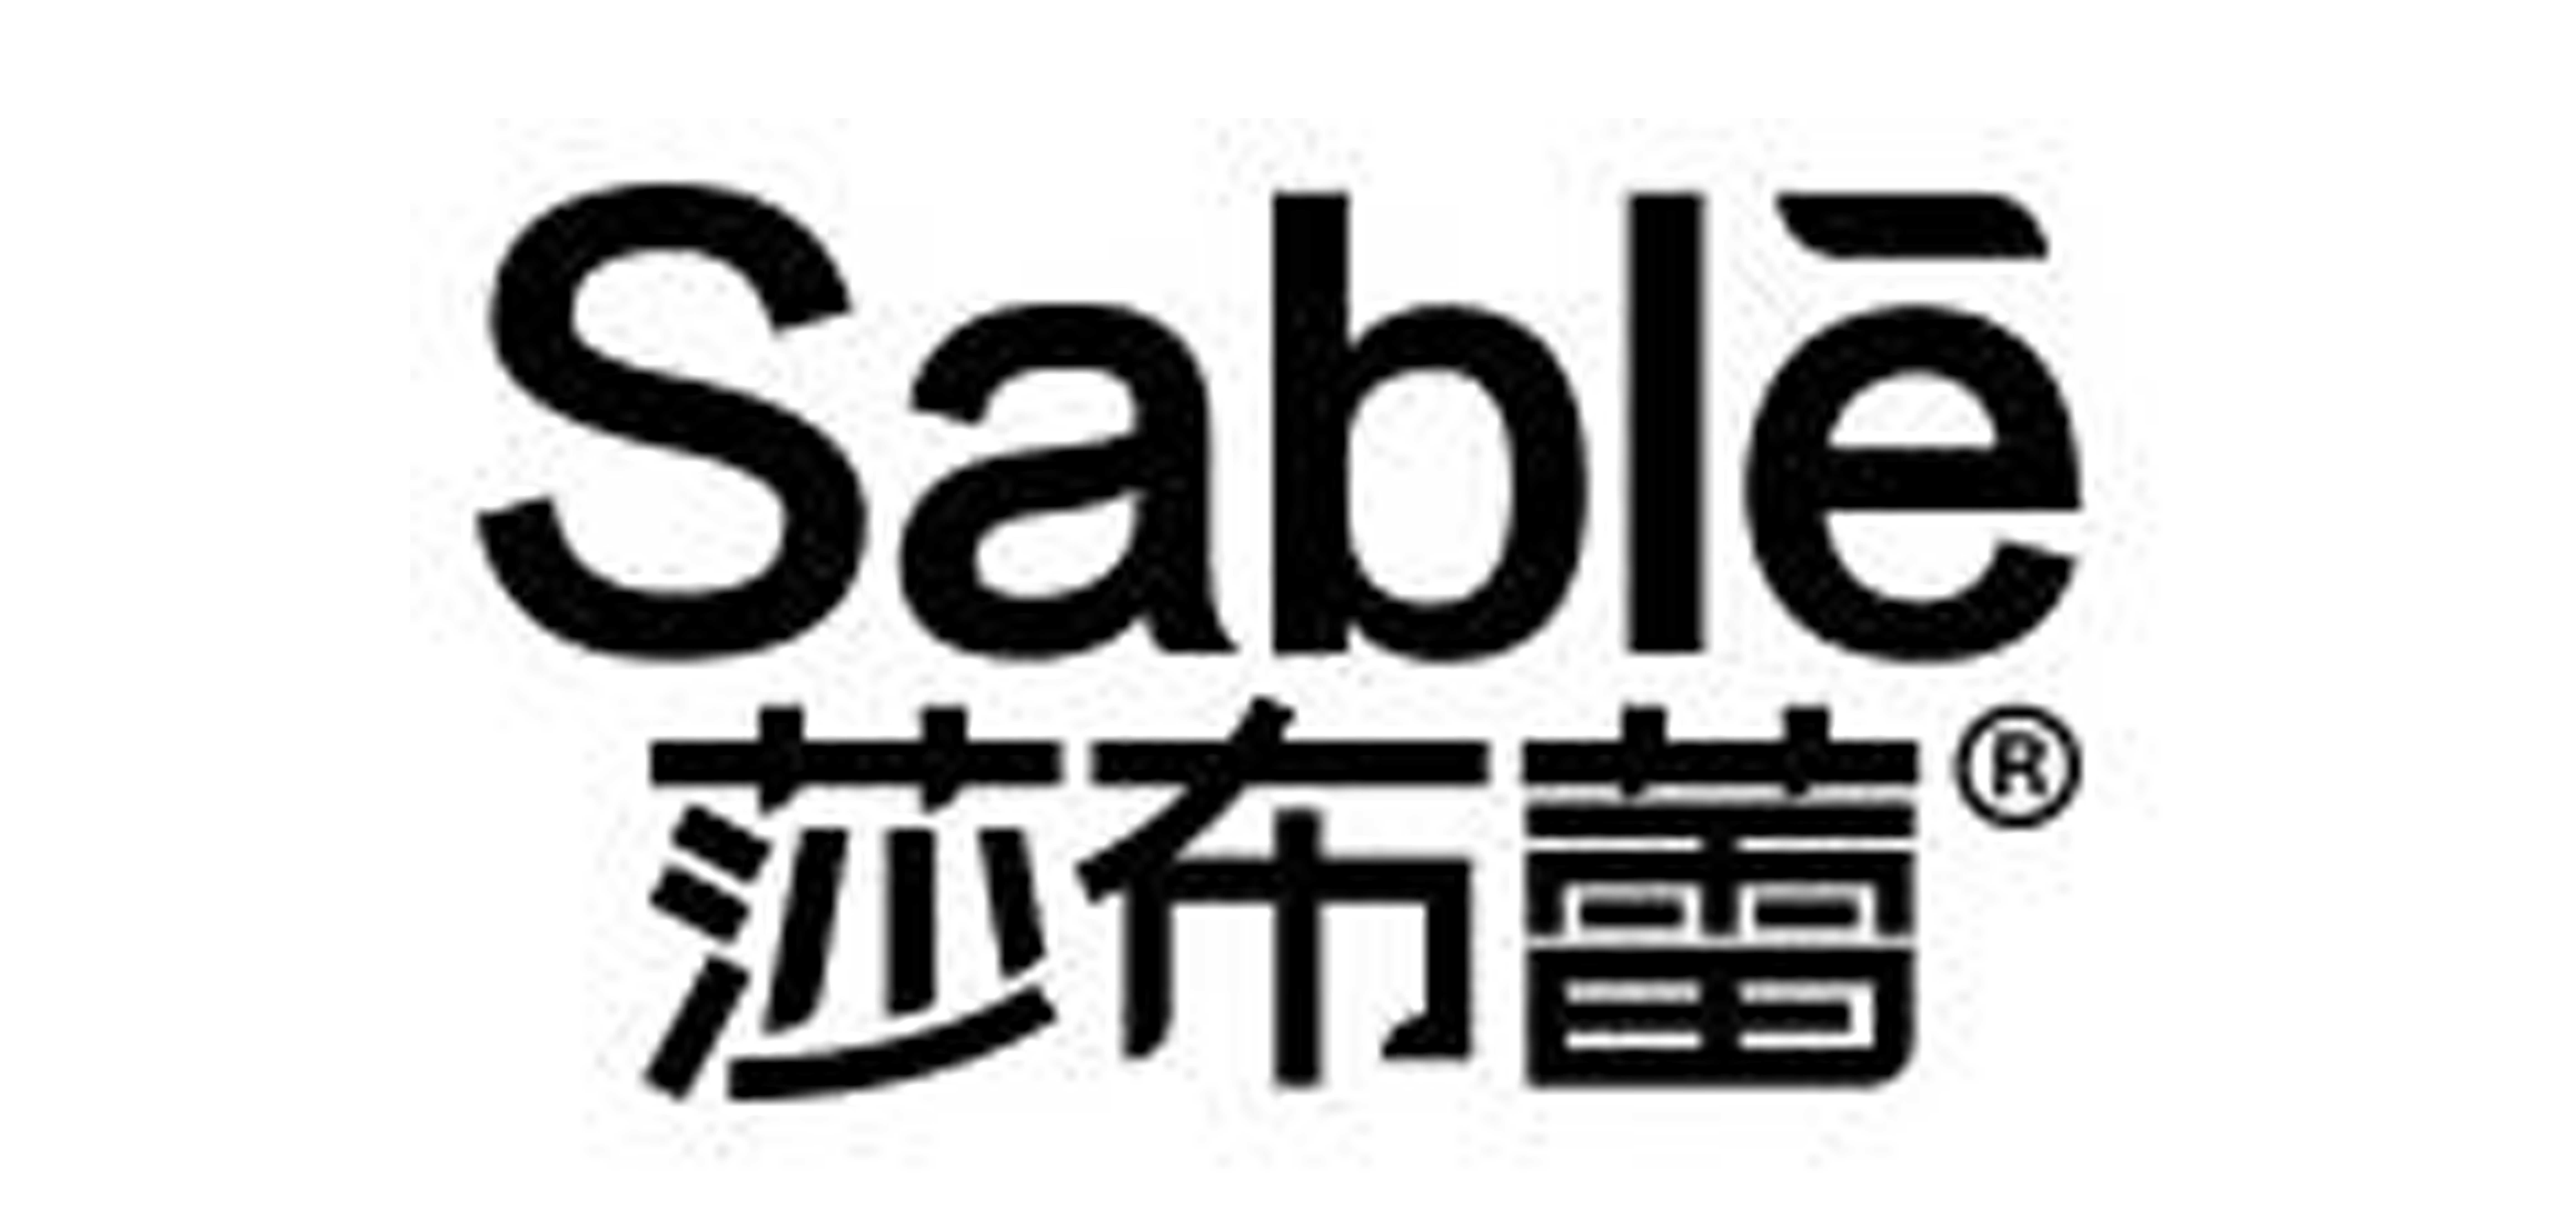 sable是什么牌子_莎布蕾品牌怎么样?